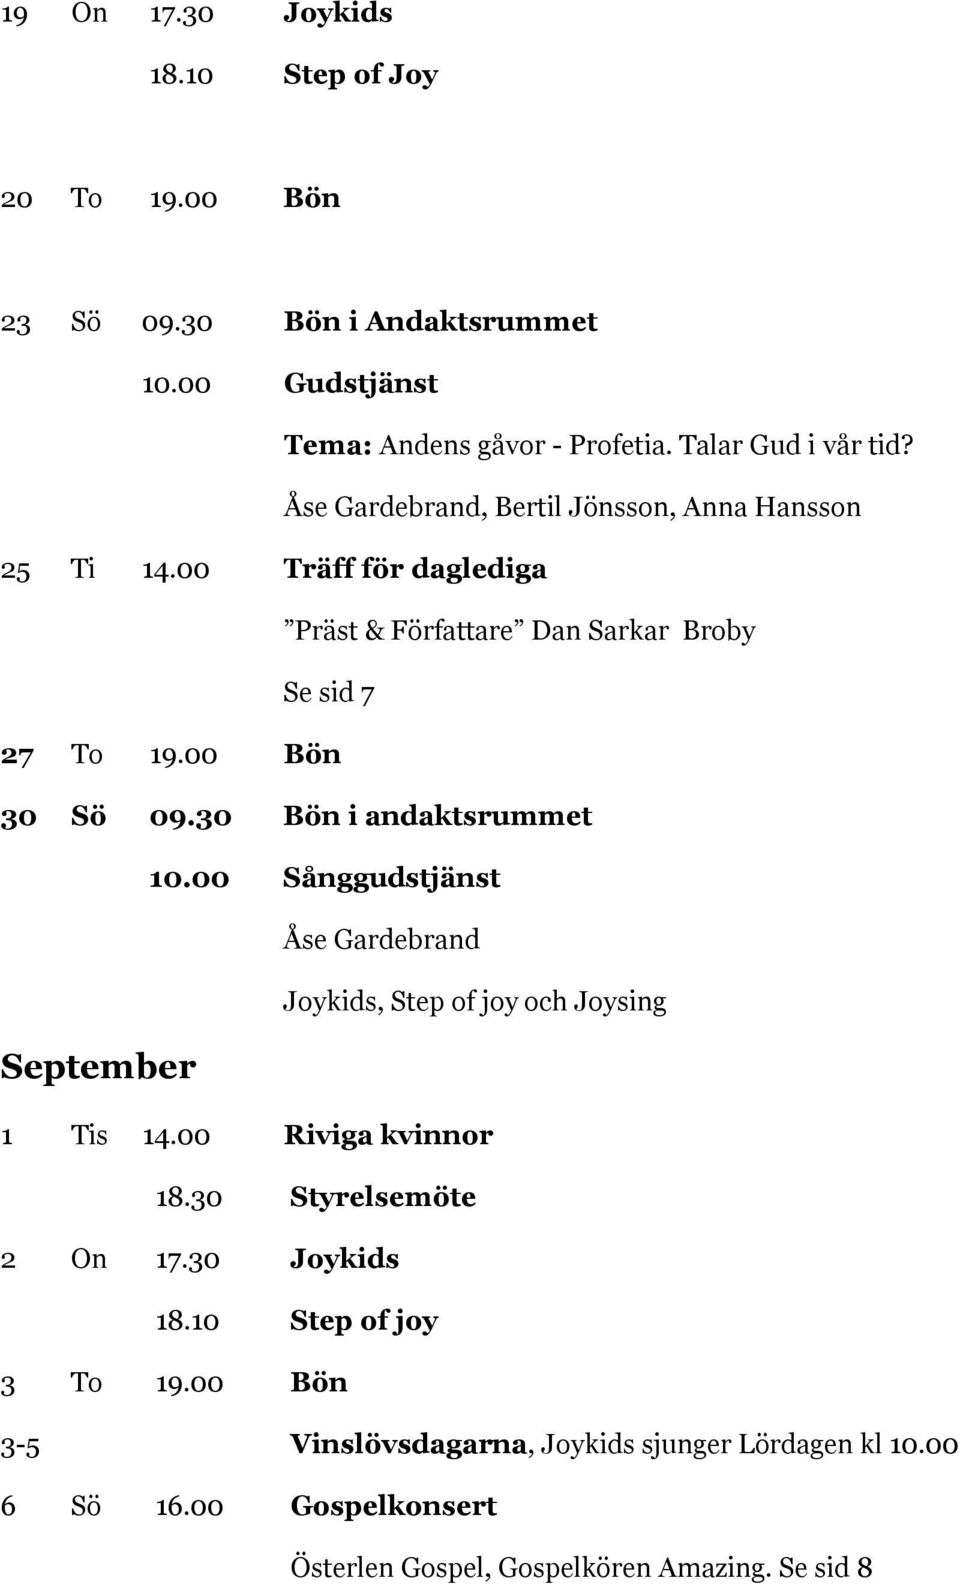 30 Bön i andaktsrummet 10.00 Sånggudstjänst Åse Gardebrand Joykids, Step of joy och Joysing September 1 Tis 14.00 Riviga kvinnor 18.30 Styrelsemöte 2 On 17.